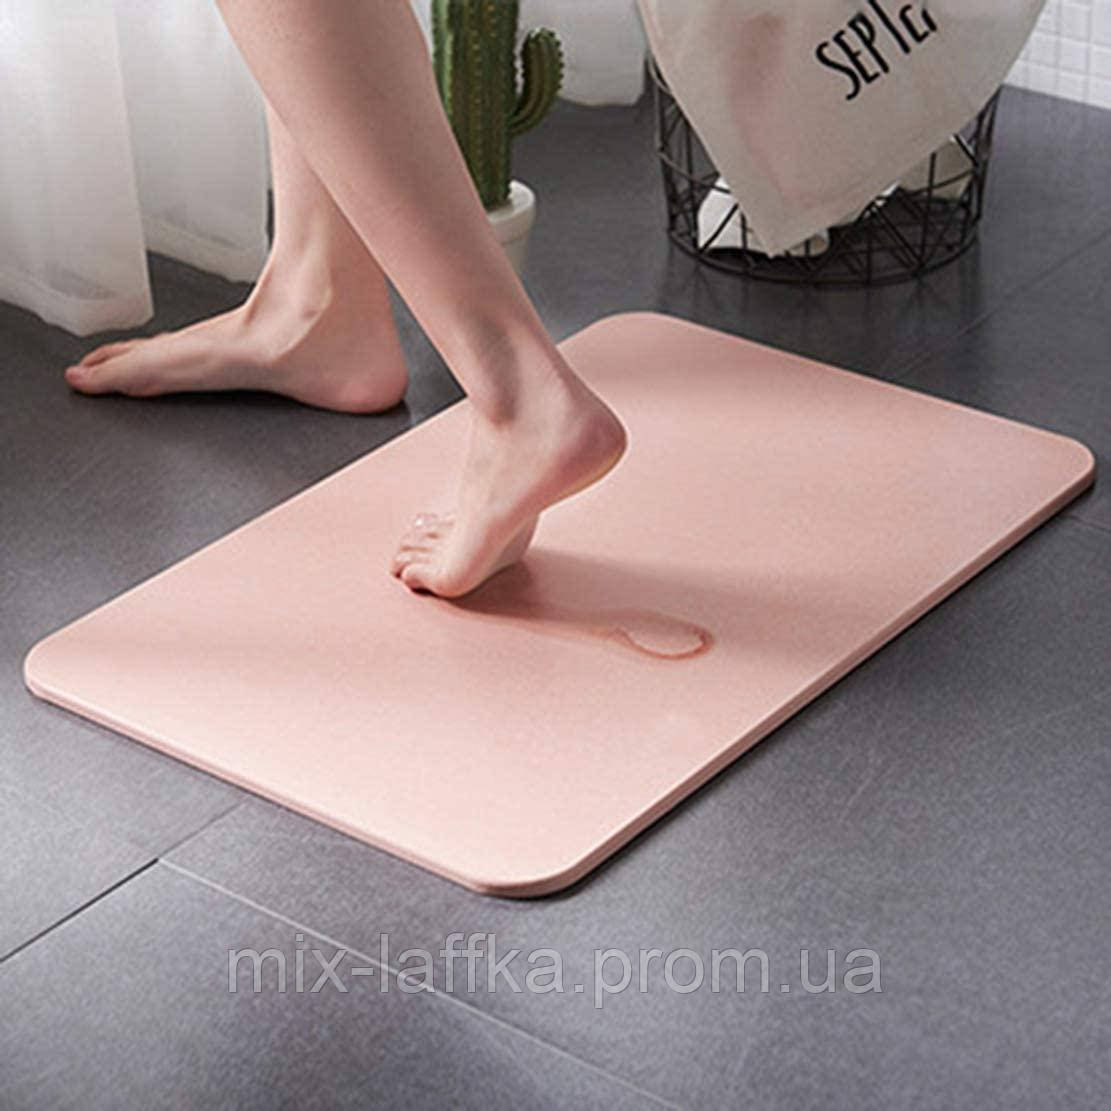 

Мгновенно впитывающий не скользящий диатомитовый коврик для ванной комнаты Arivans 60*39*1 см, Розовый